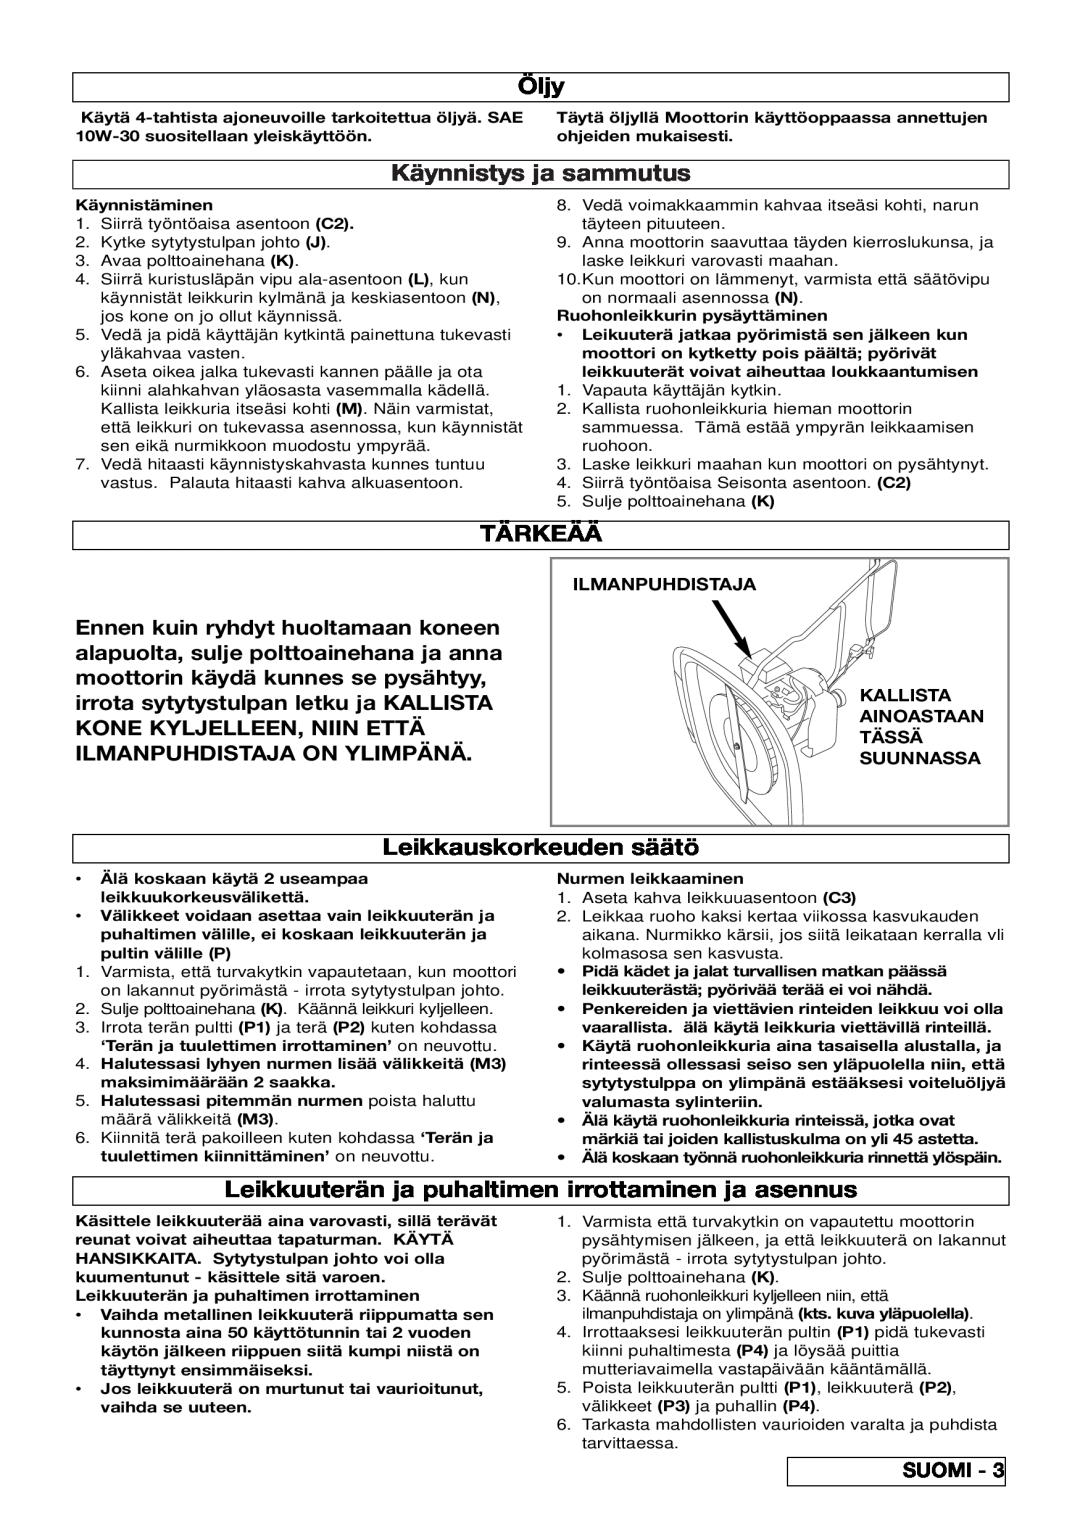 Electrolux XL500, XL550 manual Öljy, Käynnistys ja sammutus, Tärkeää, Leikkauskorkeuden säätö, Suomi, Ilmanpuhdistaja 